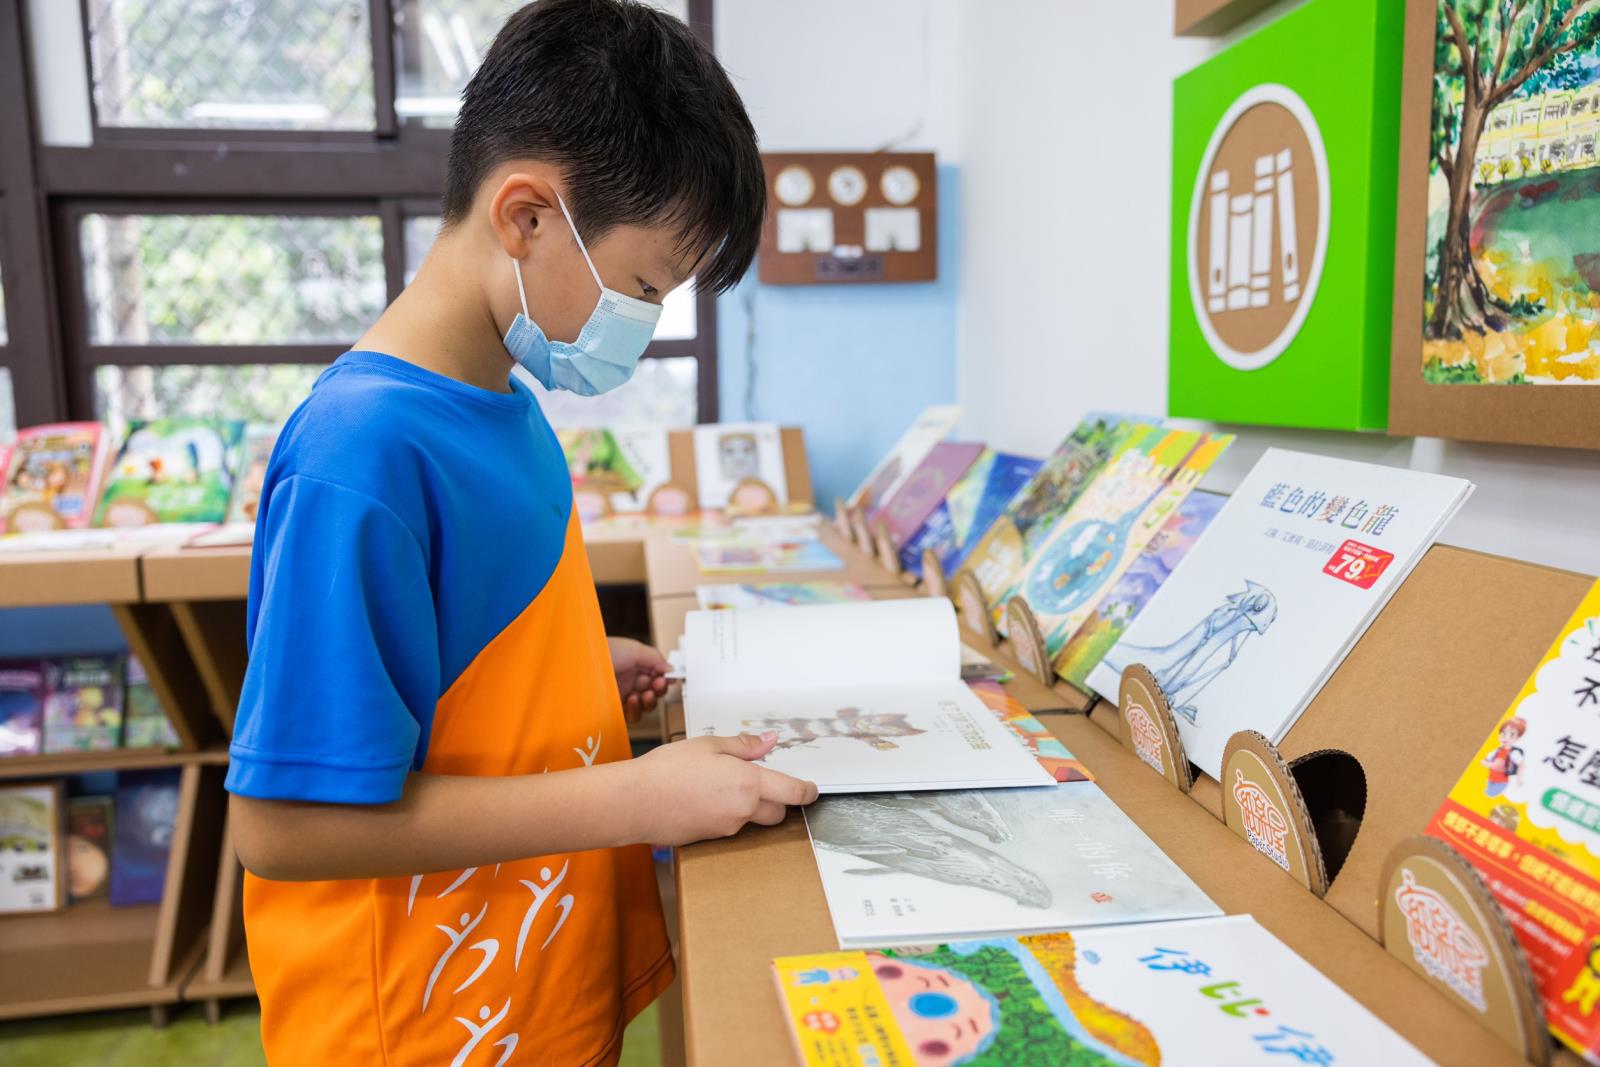 04.7-ELEVEN同步規畫空間資源，投入台南地區超過20位夥伴協助裝修工程及清運設施，關係企業更提供100本書籍作為紙圖書館首批藏書，共同造就100%回收永續紙材的紙圖書館。.jpg